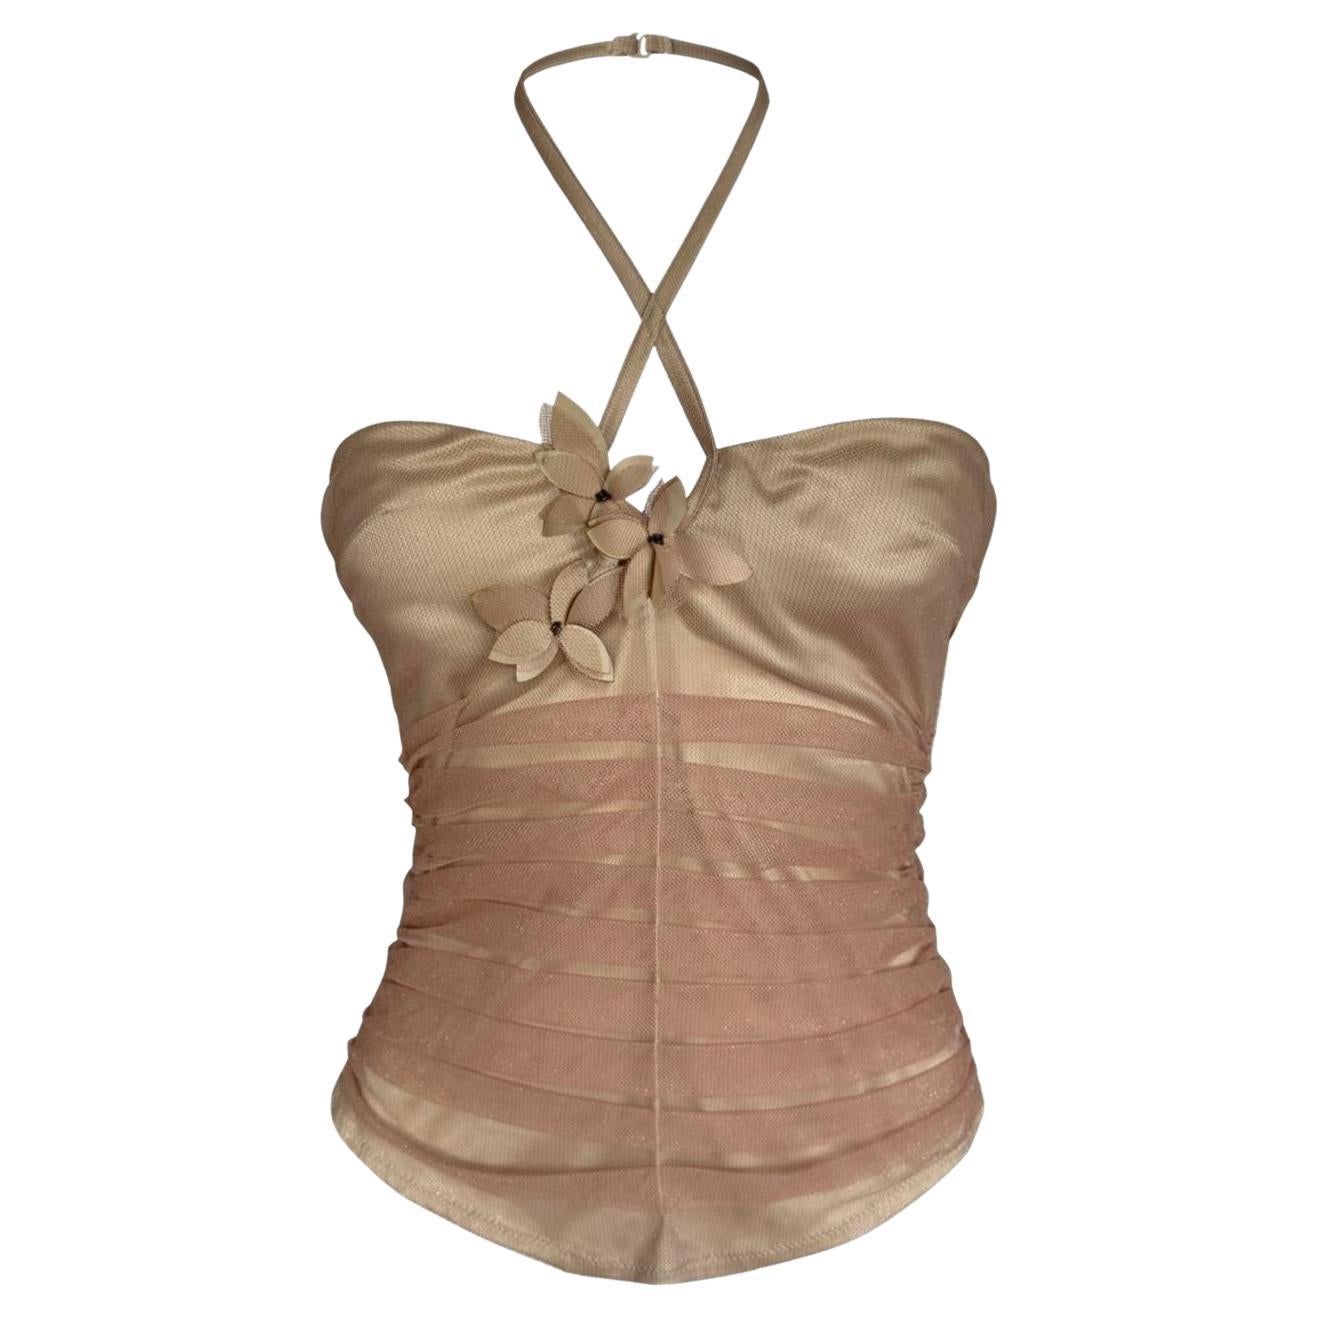 Vintage La Perla halter neck corset with flowers details